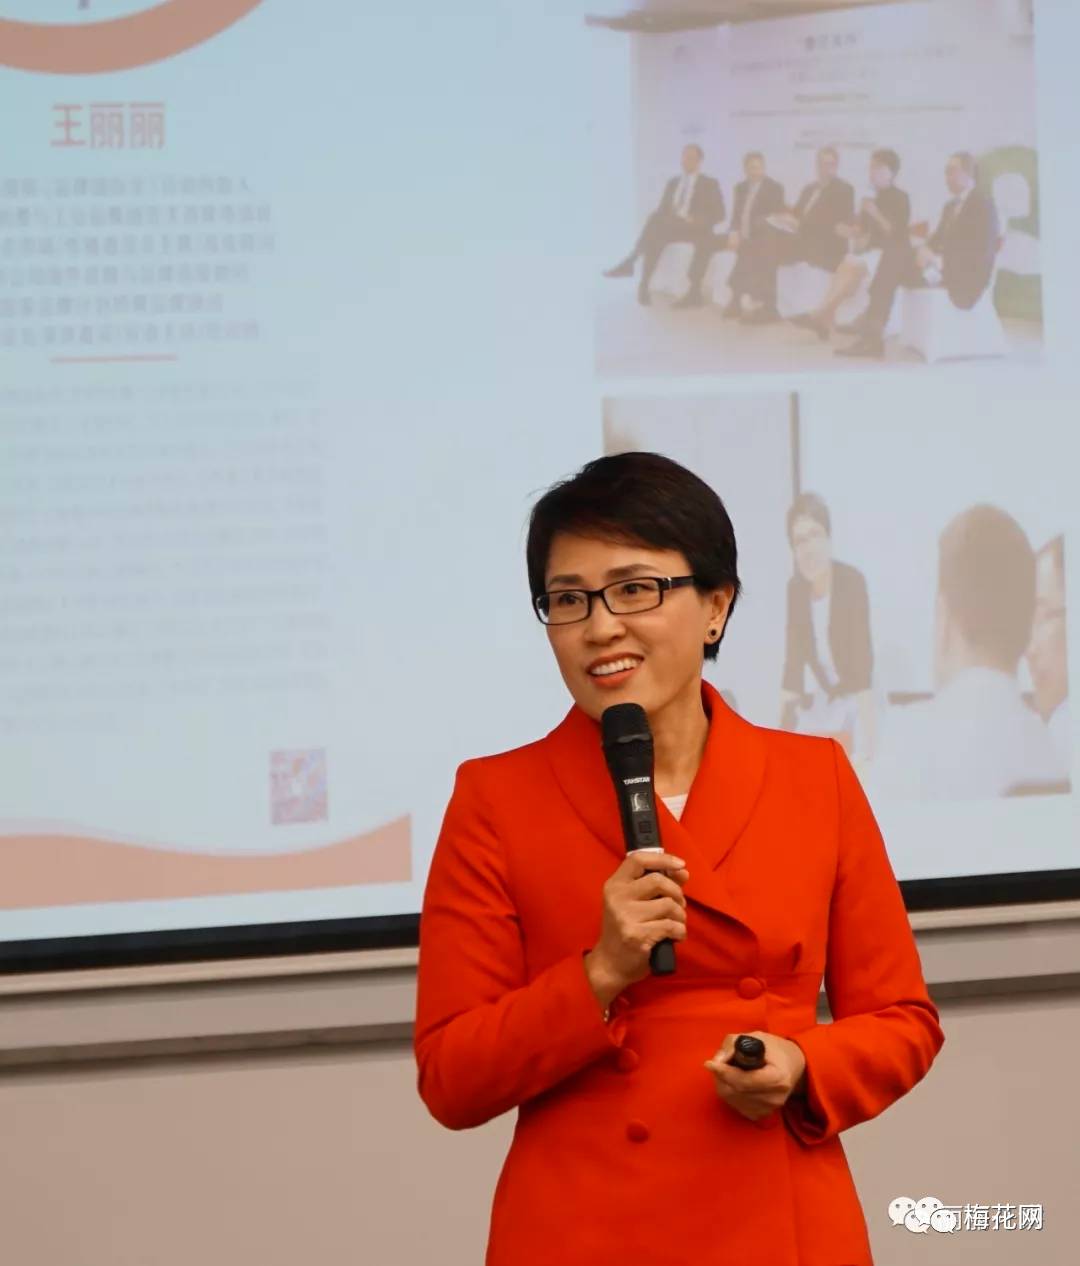 上海站公开课上(美国hult商学院),品牌声誉与危机管理专家王丽丽受邀